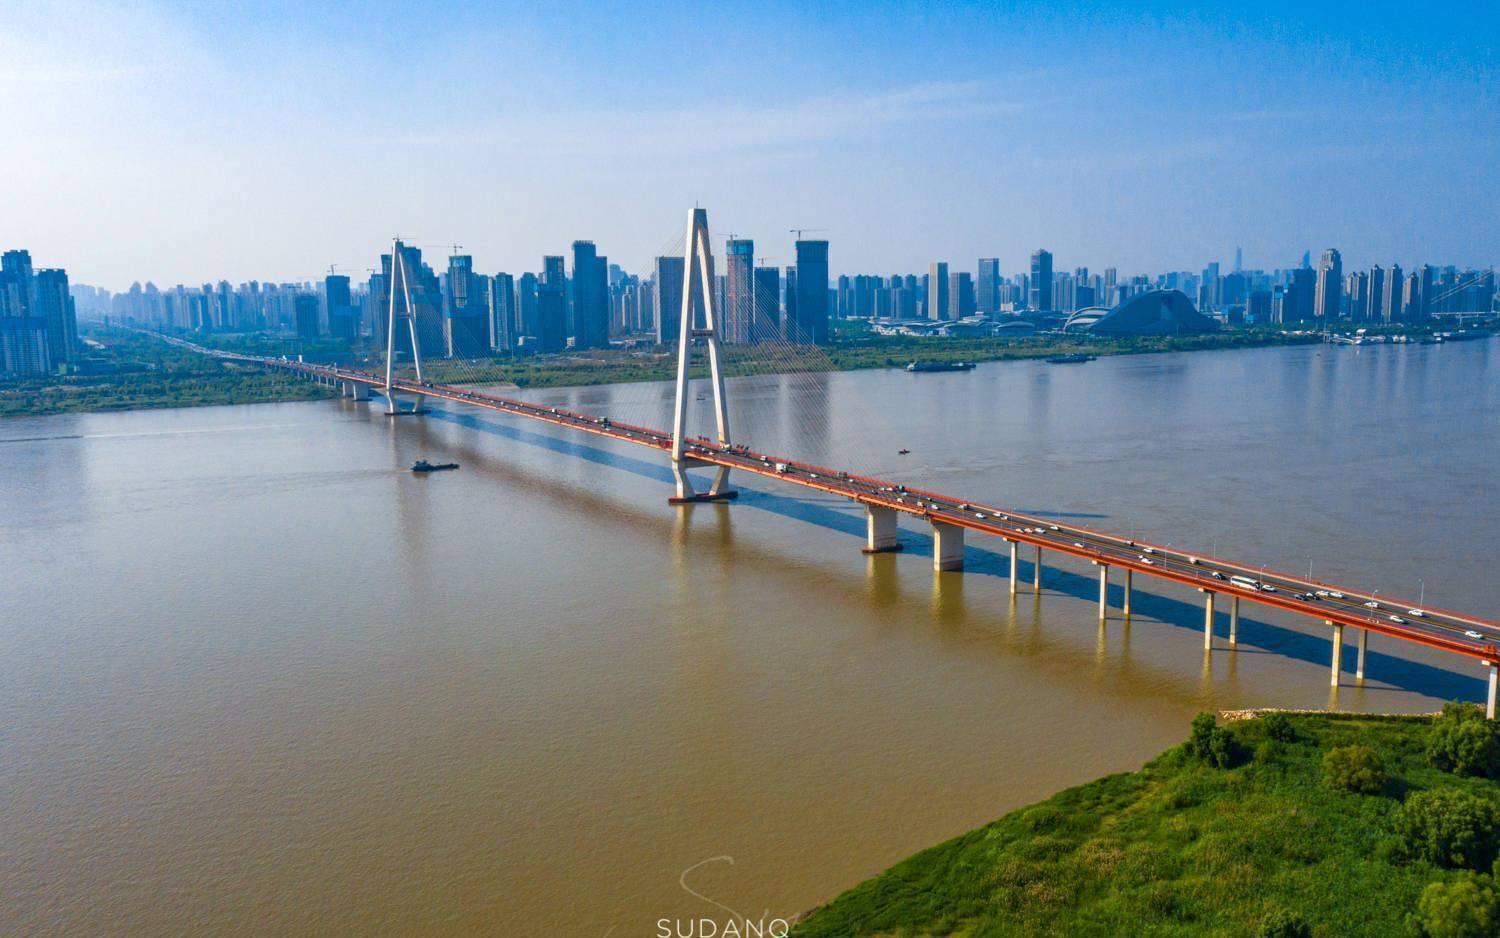 它是武汉第三座长江大桥,据悉为世界第三大桥,但名声不太好